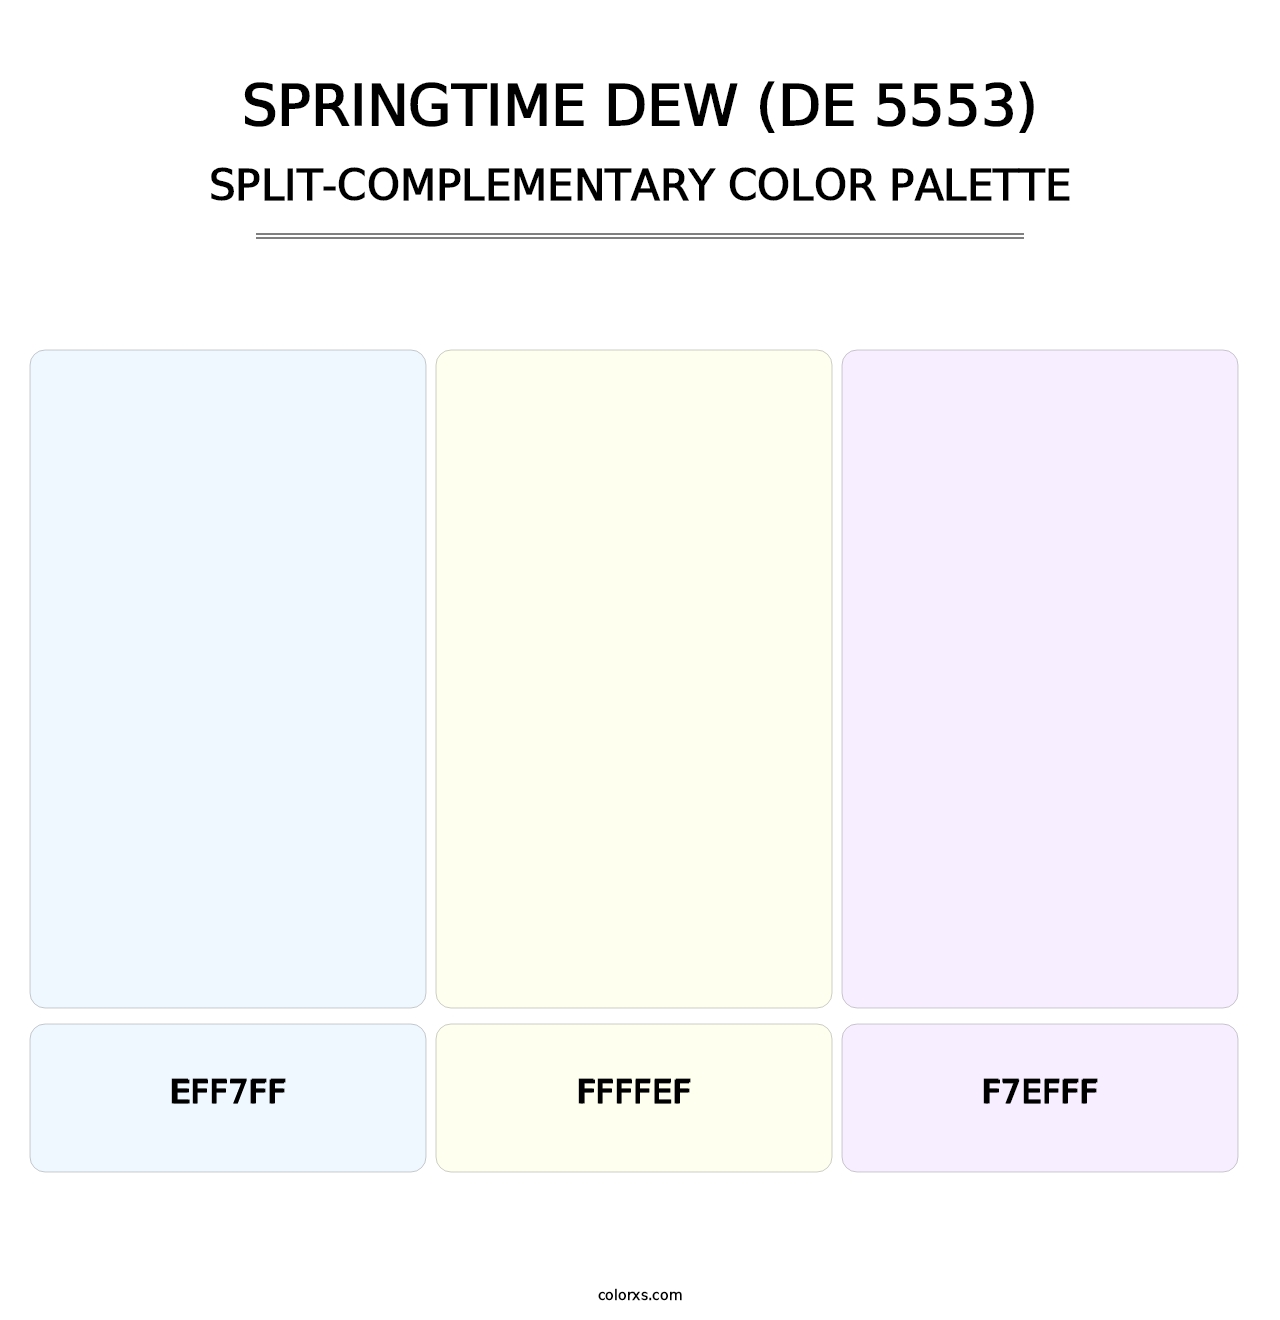 Springtime Dew (DE 5553) - Split-Complementary Color Palette